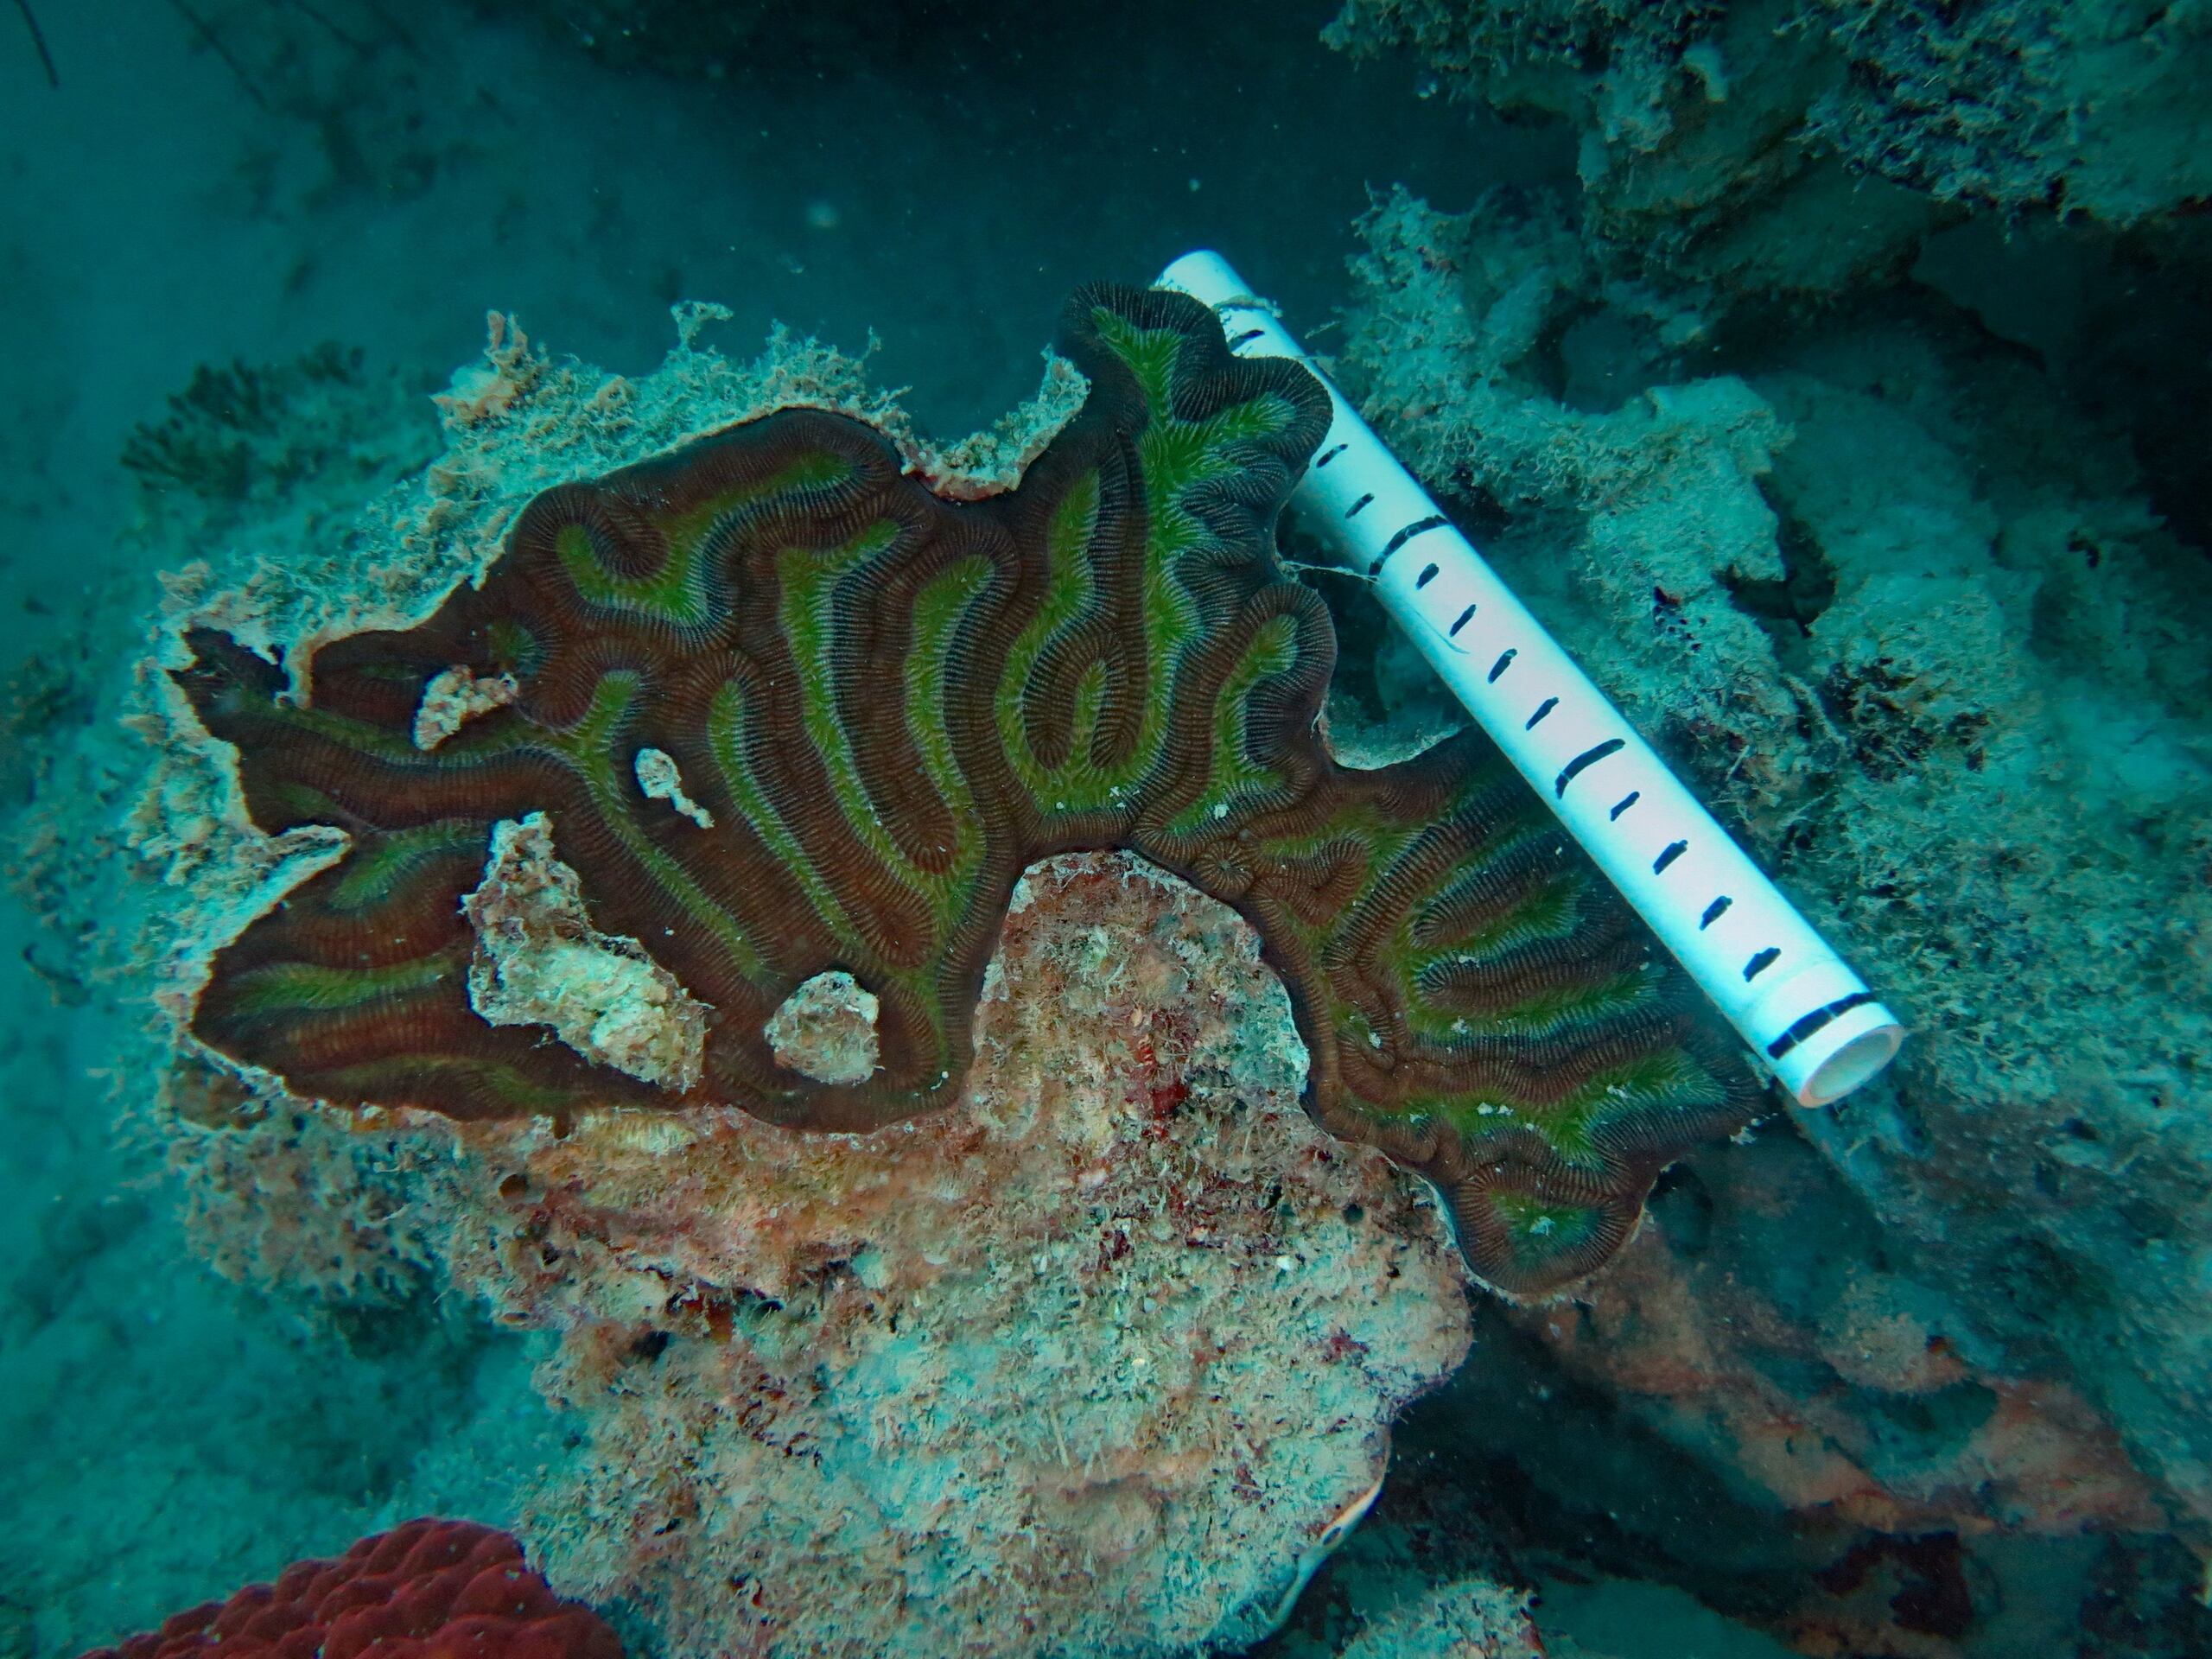 Fotografía cedida por el Departamento de Ciencias Marinas de la Universidad de Puerto Rico en Mayagüez donde se muestra un coral en los arrecifes del área de "Pináculos" y "Turrumote" ubicada a un mínimo de 3 millas (4.8 kilómetros) de La Parguera.